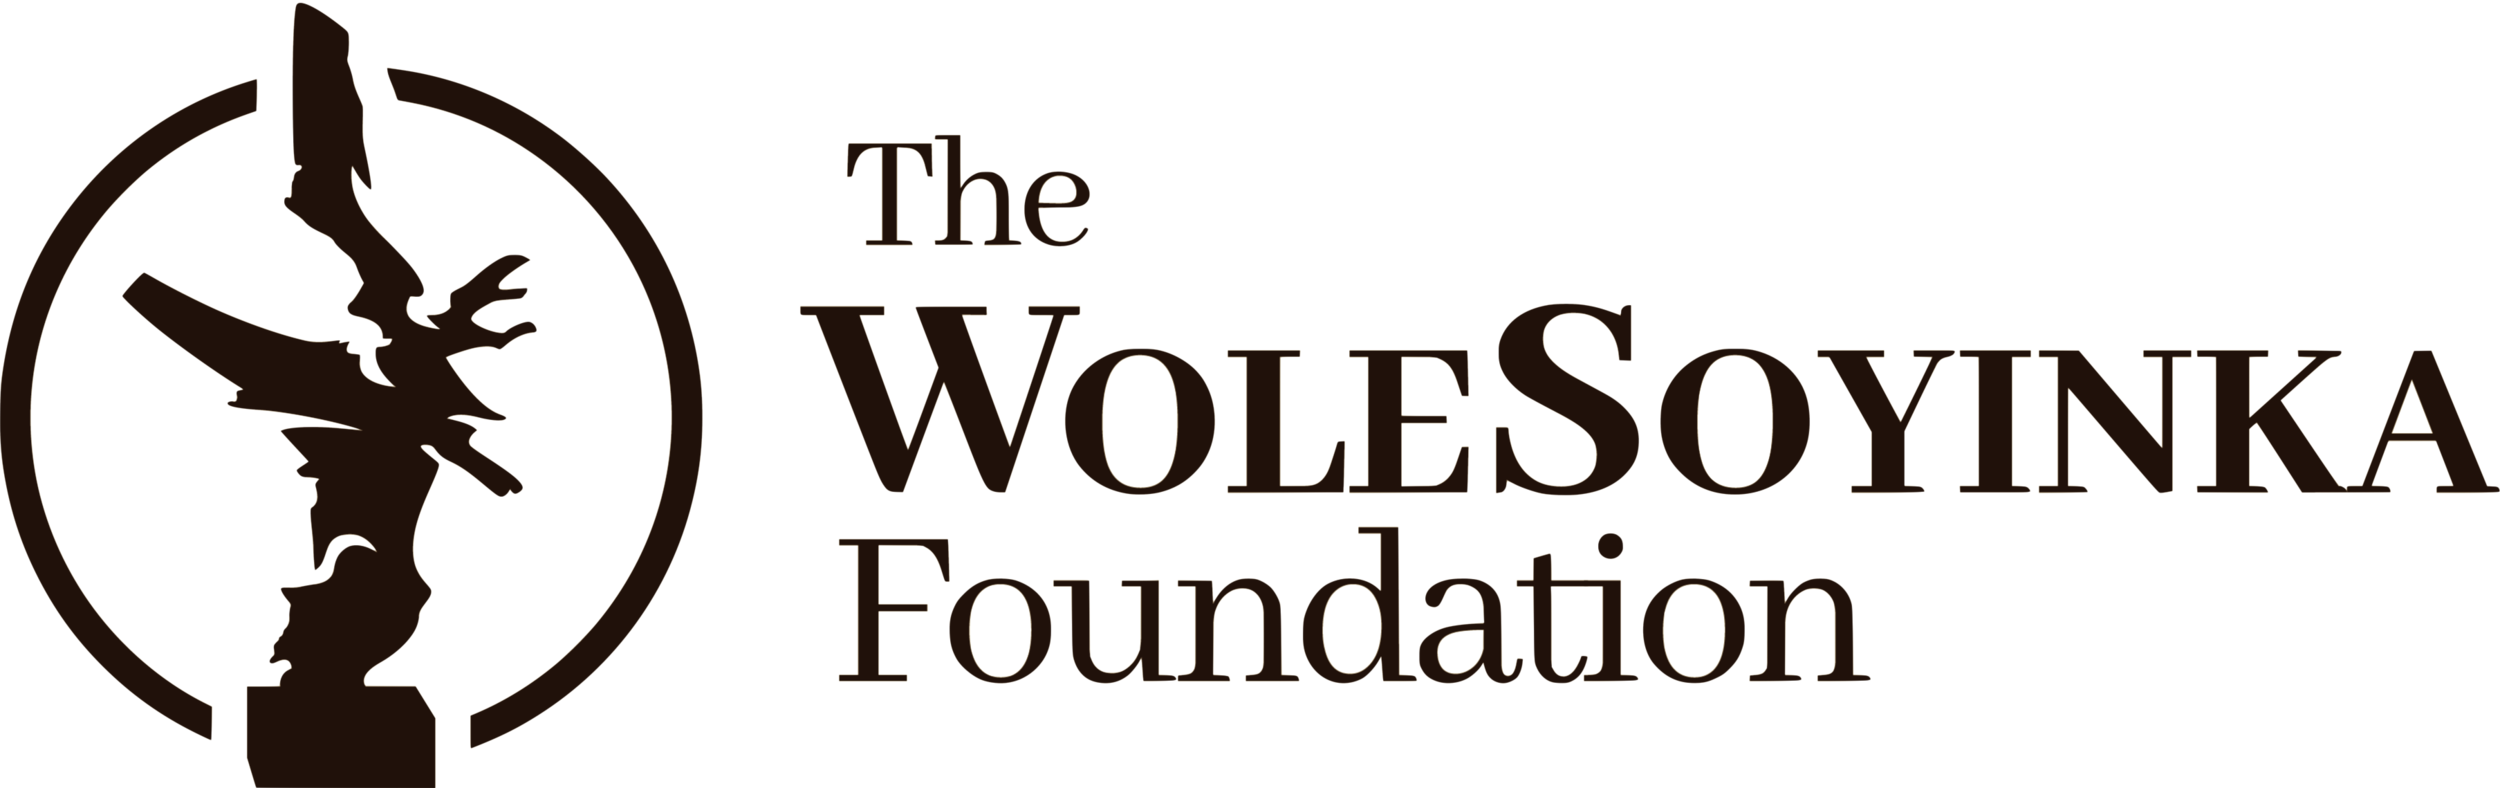 The Wole Soyinka Foundation